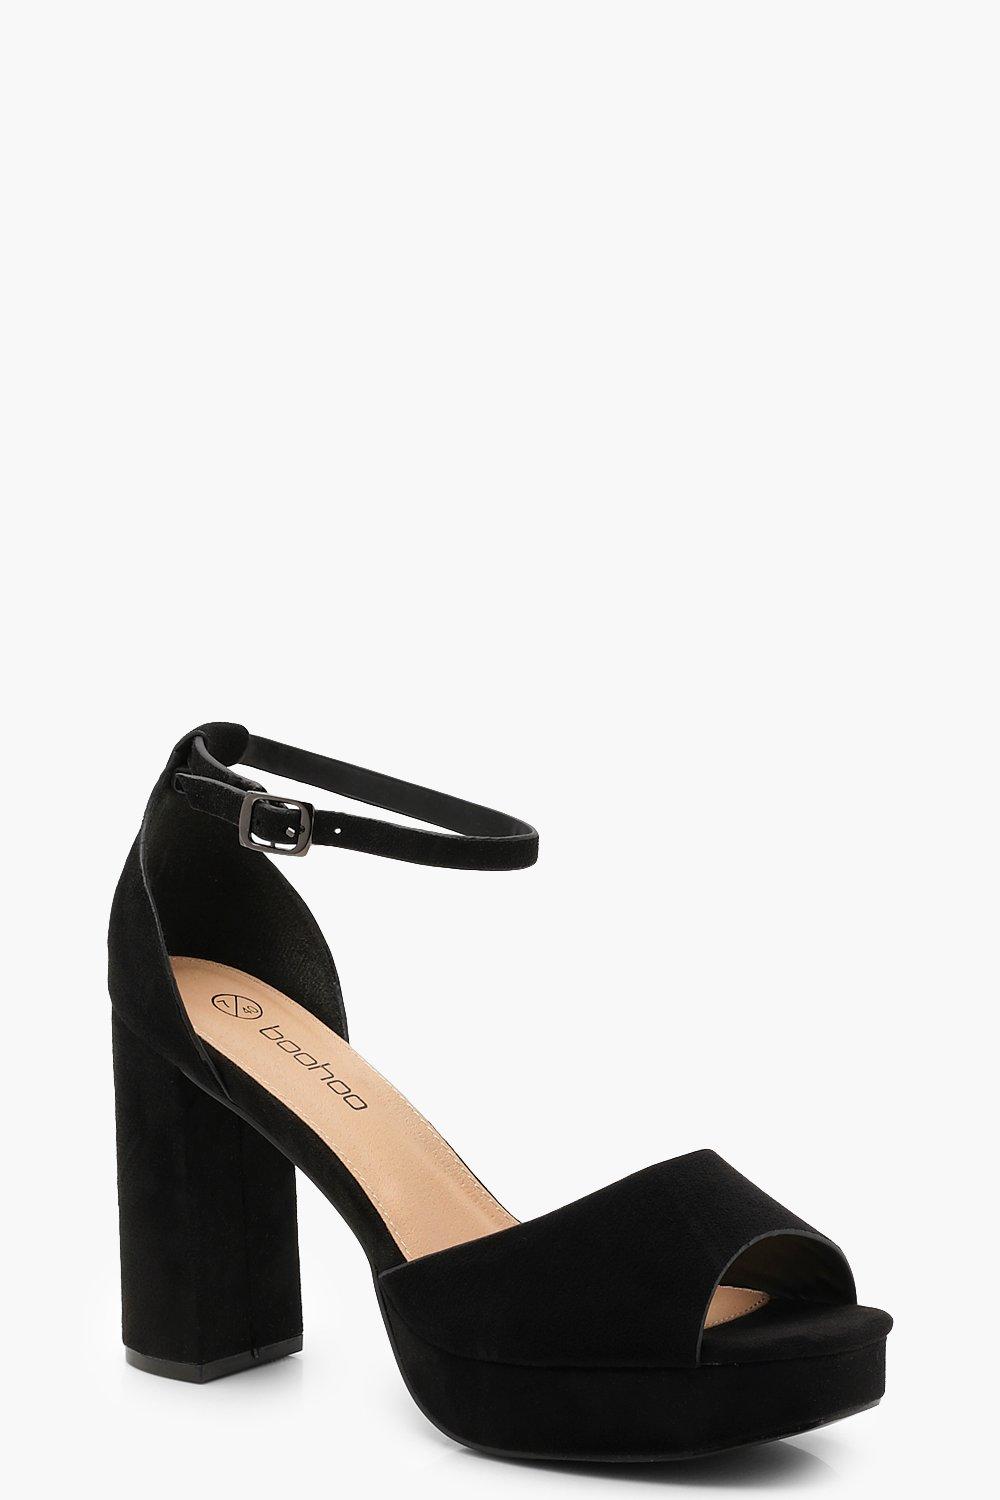 black platform heels wide fit